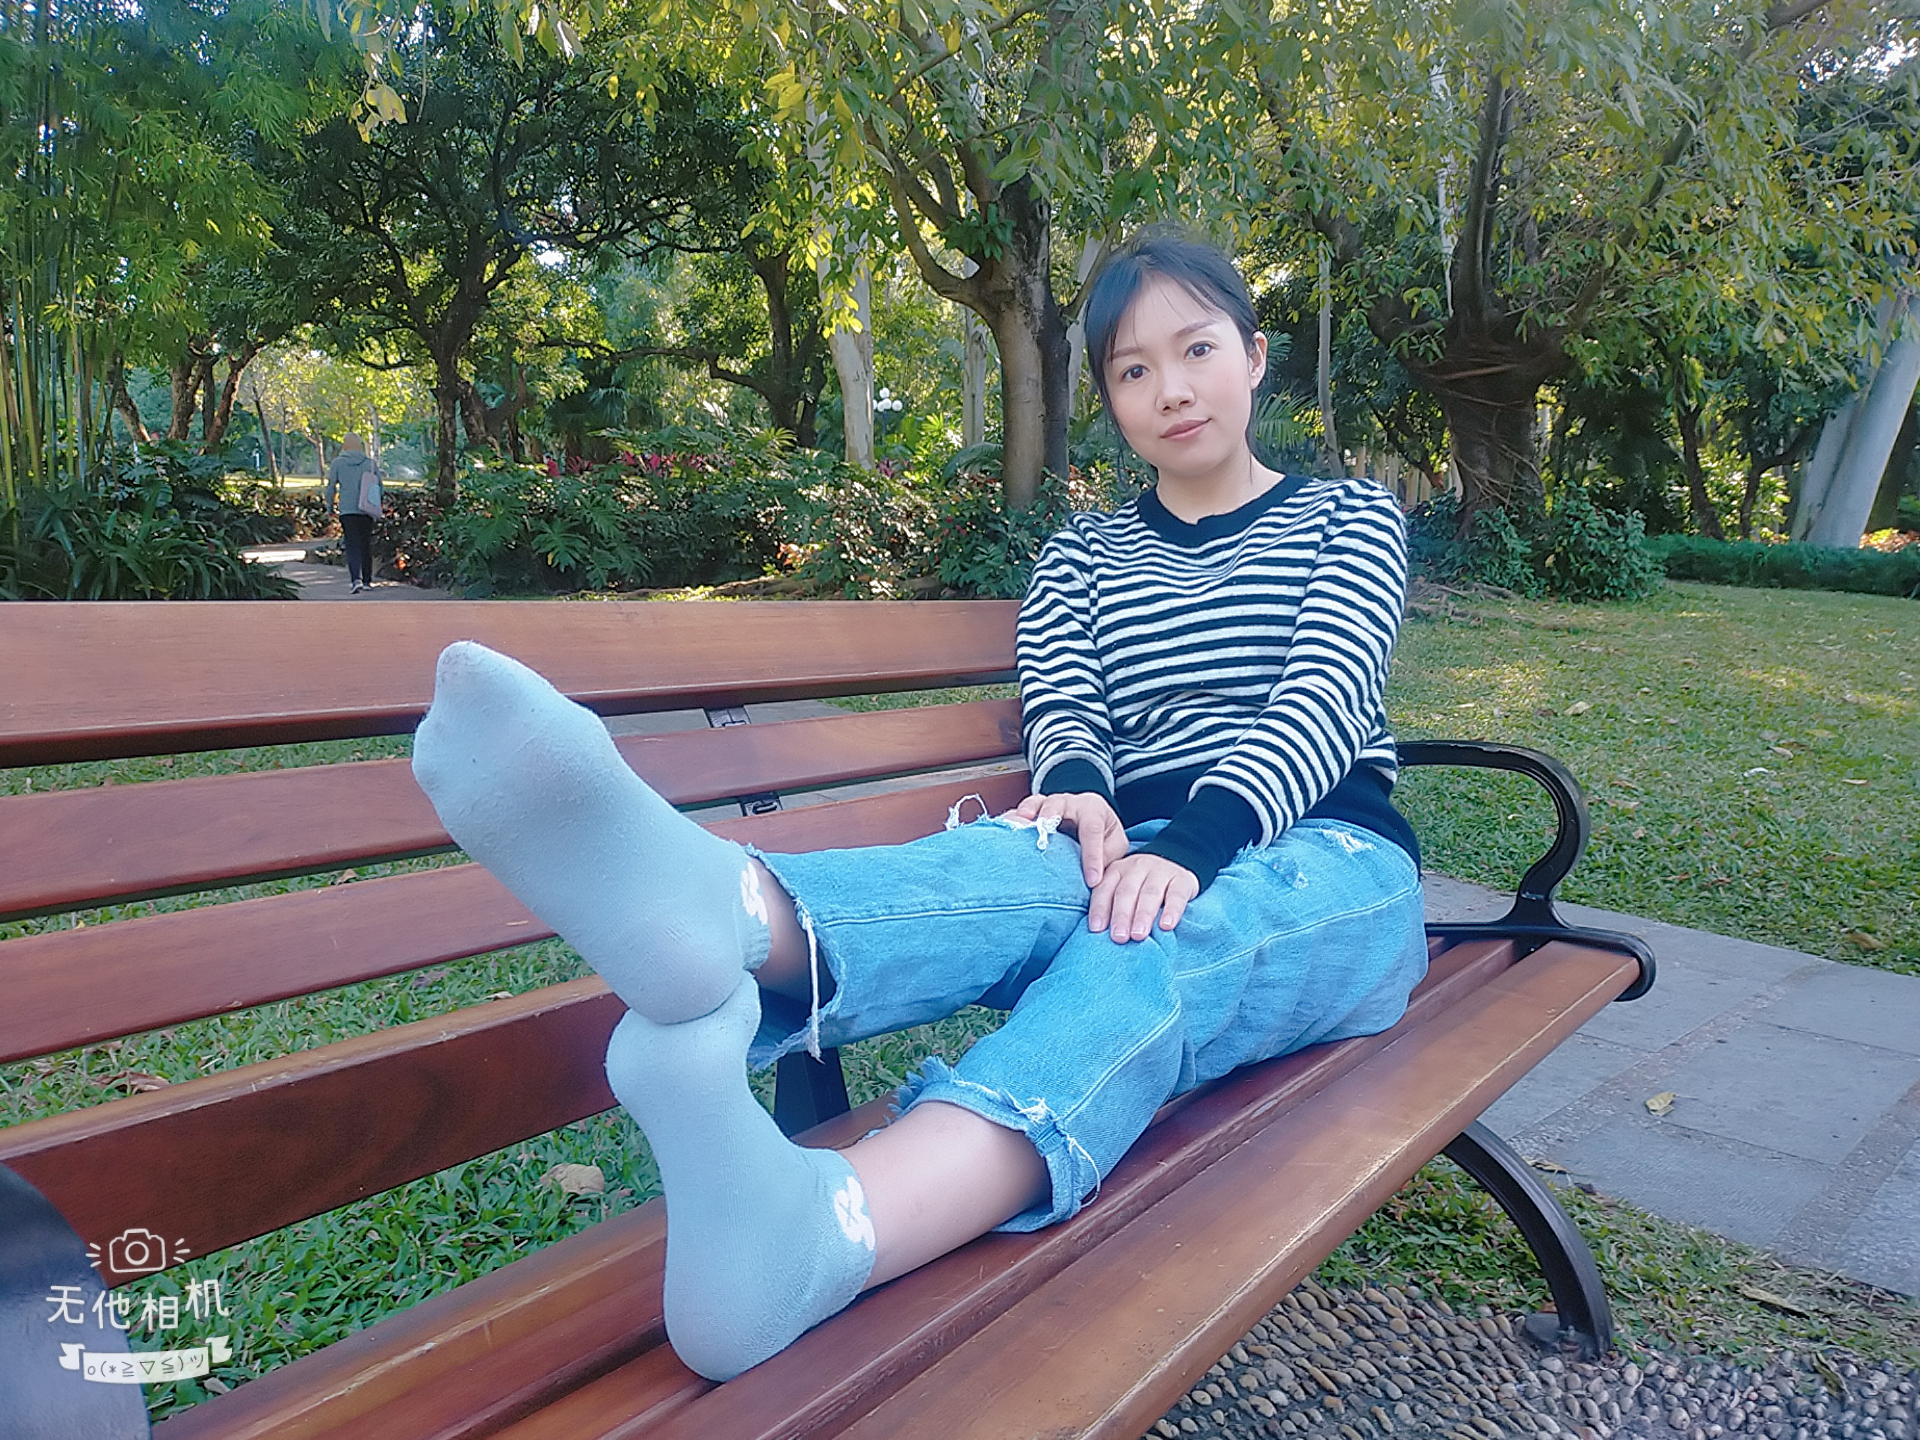 丁艳姐姐在荔枝公园穿着浅蓝色袜子挺漂亮36p